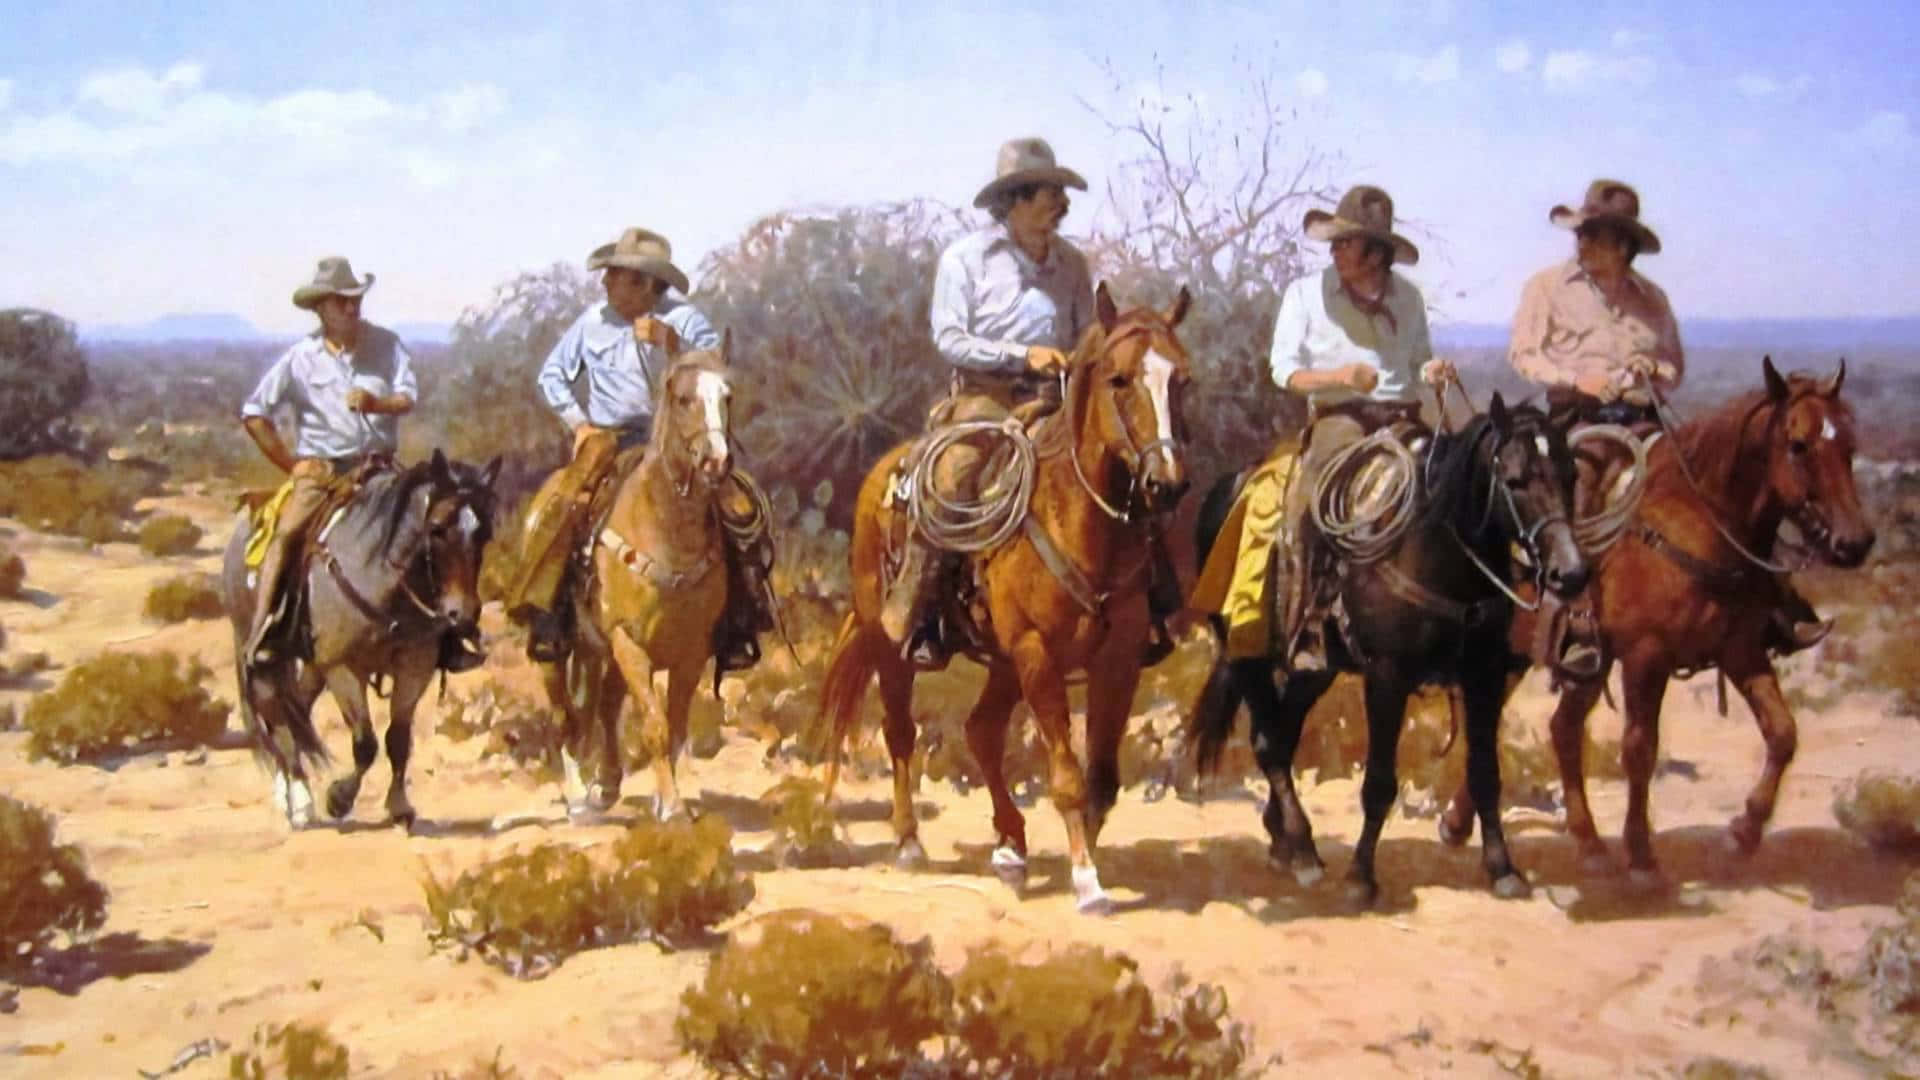 Rugged Cowboys Riding Horses at Sunset